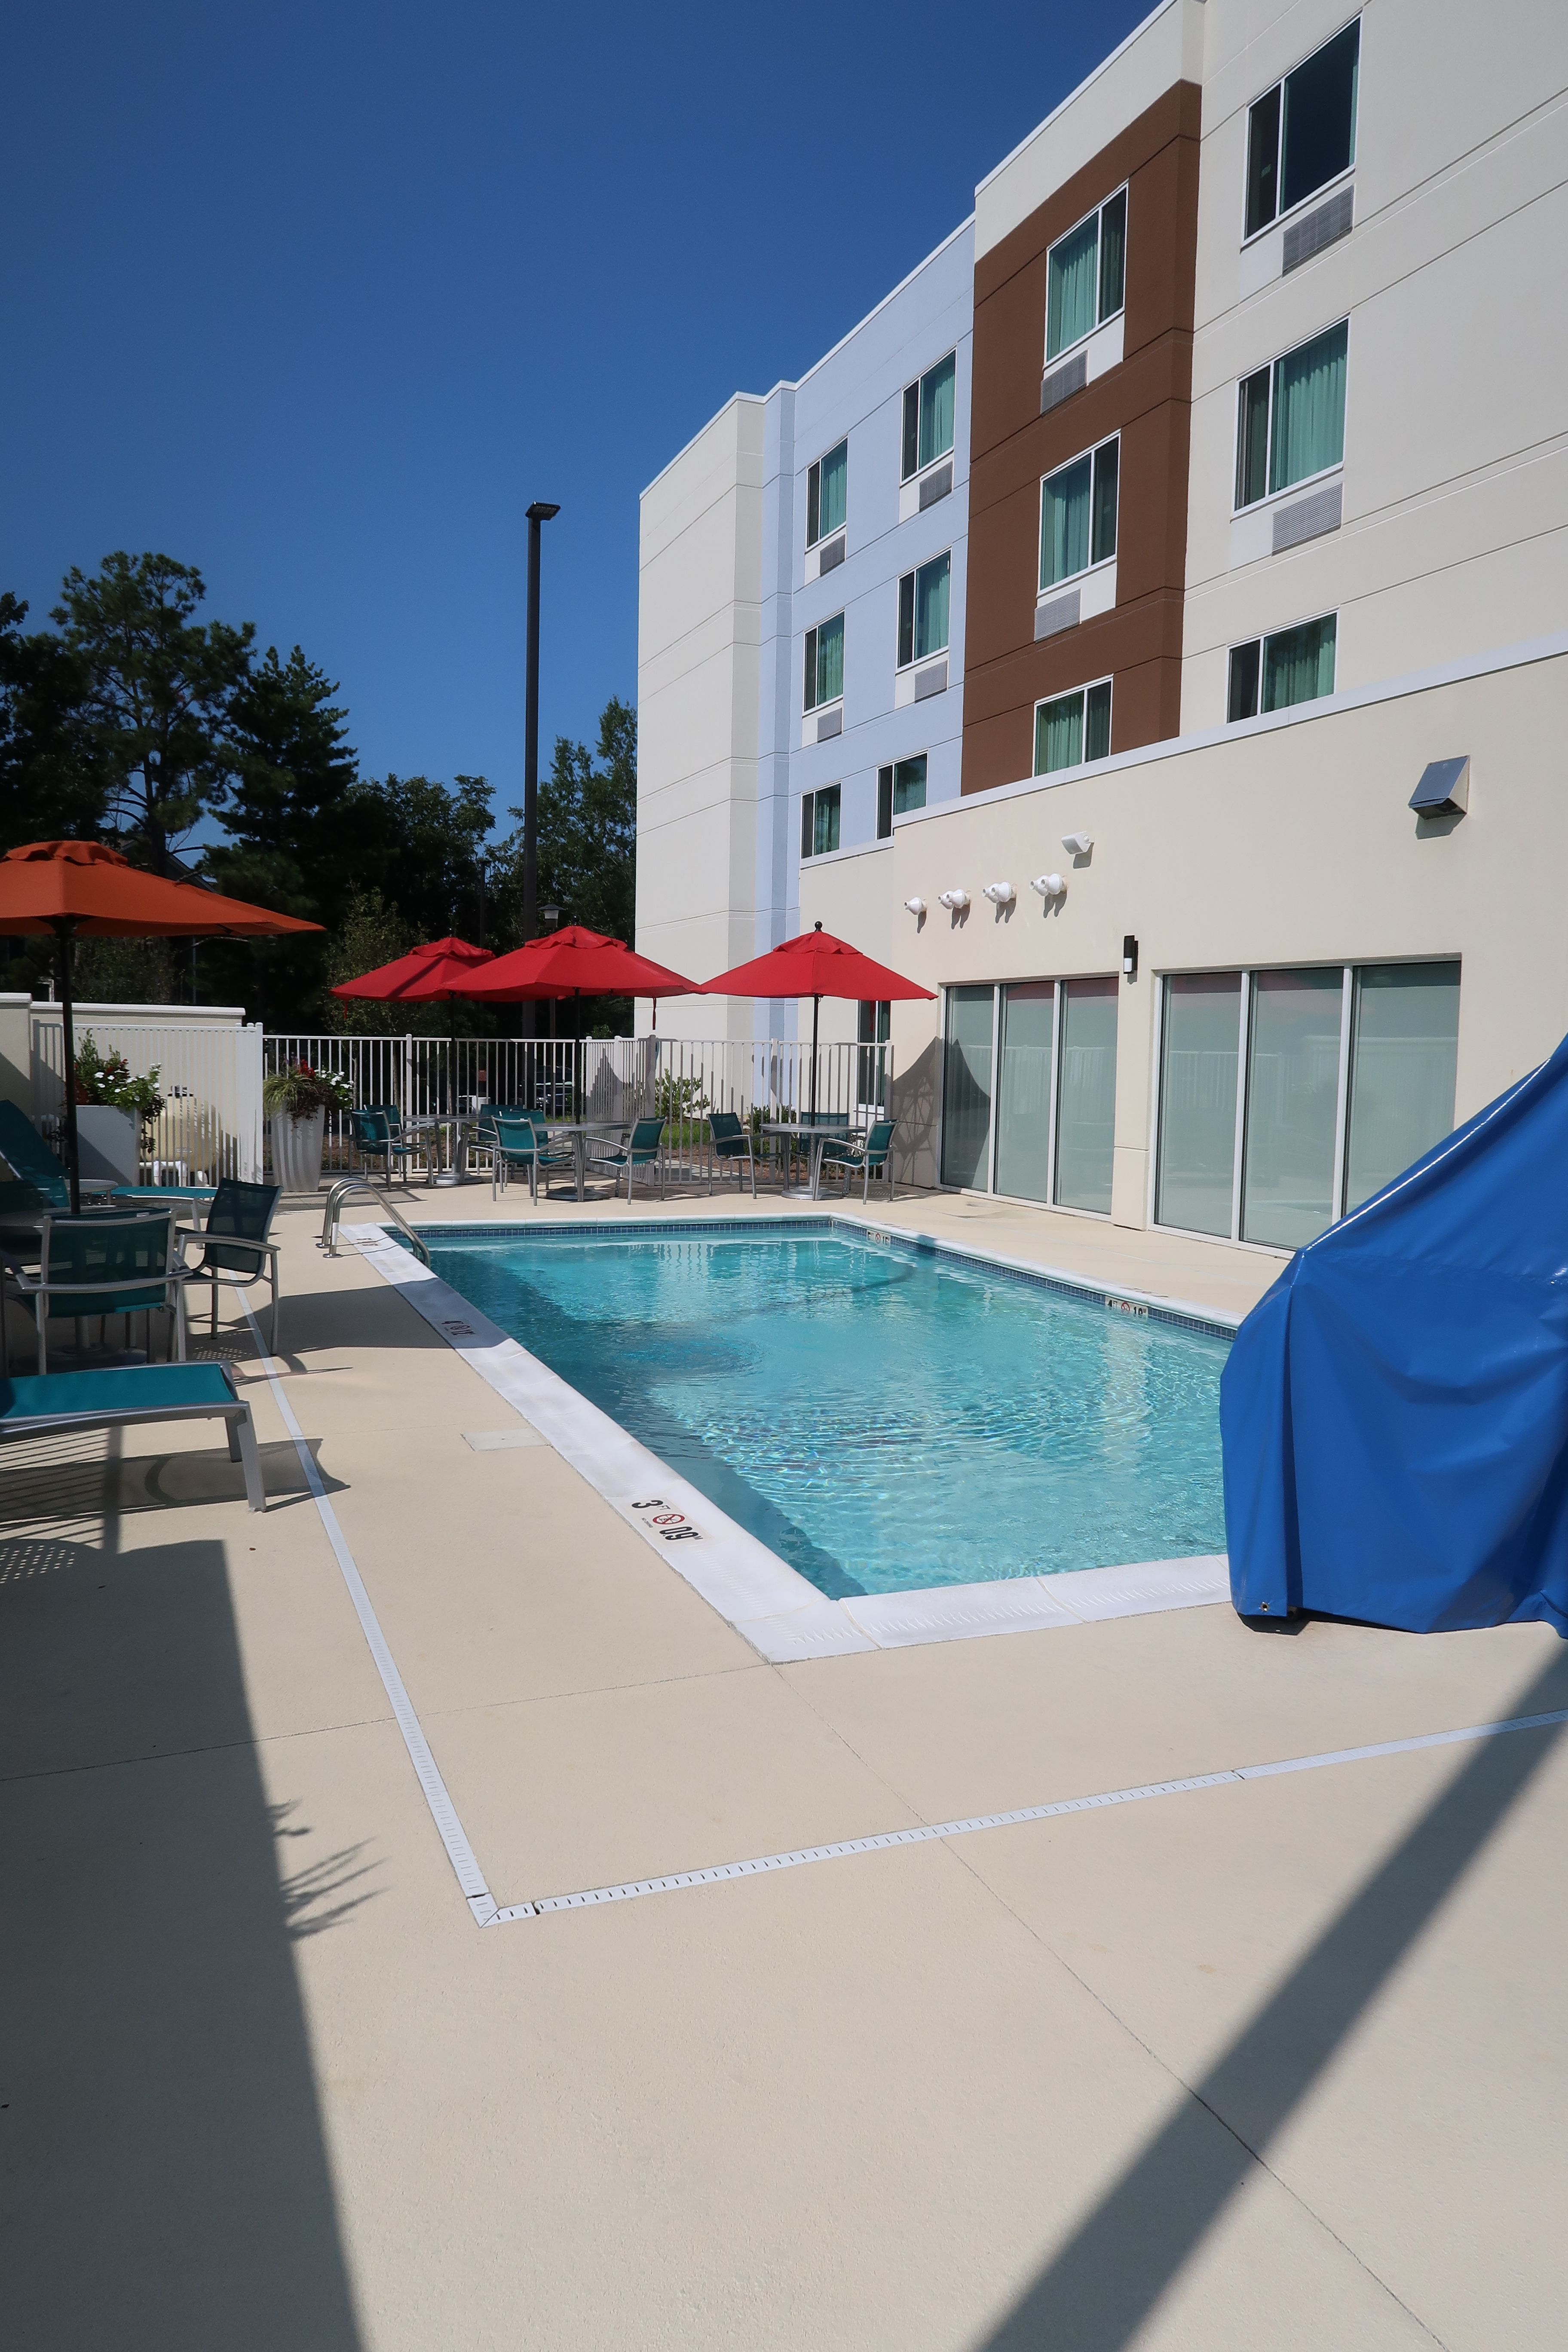 Pool Towneplace Suites Marriott in Auburn, Alabama!.JPG